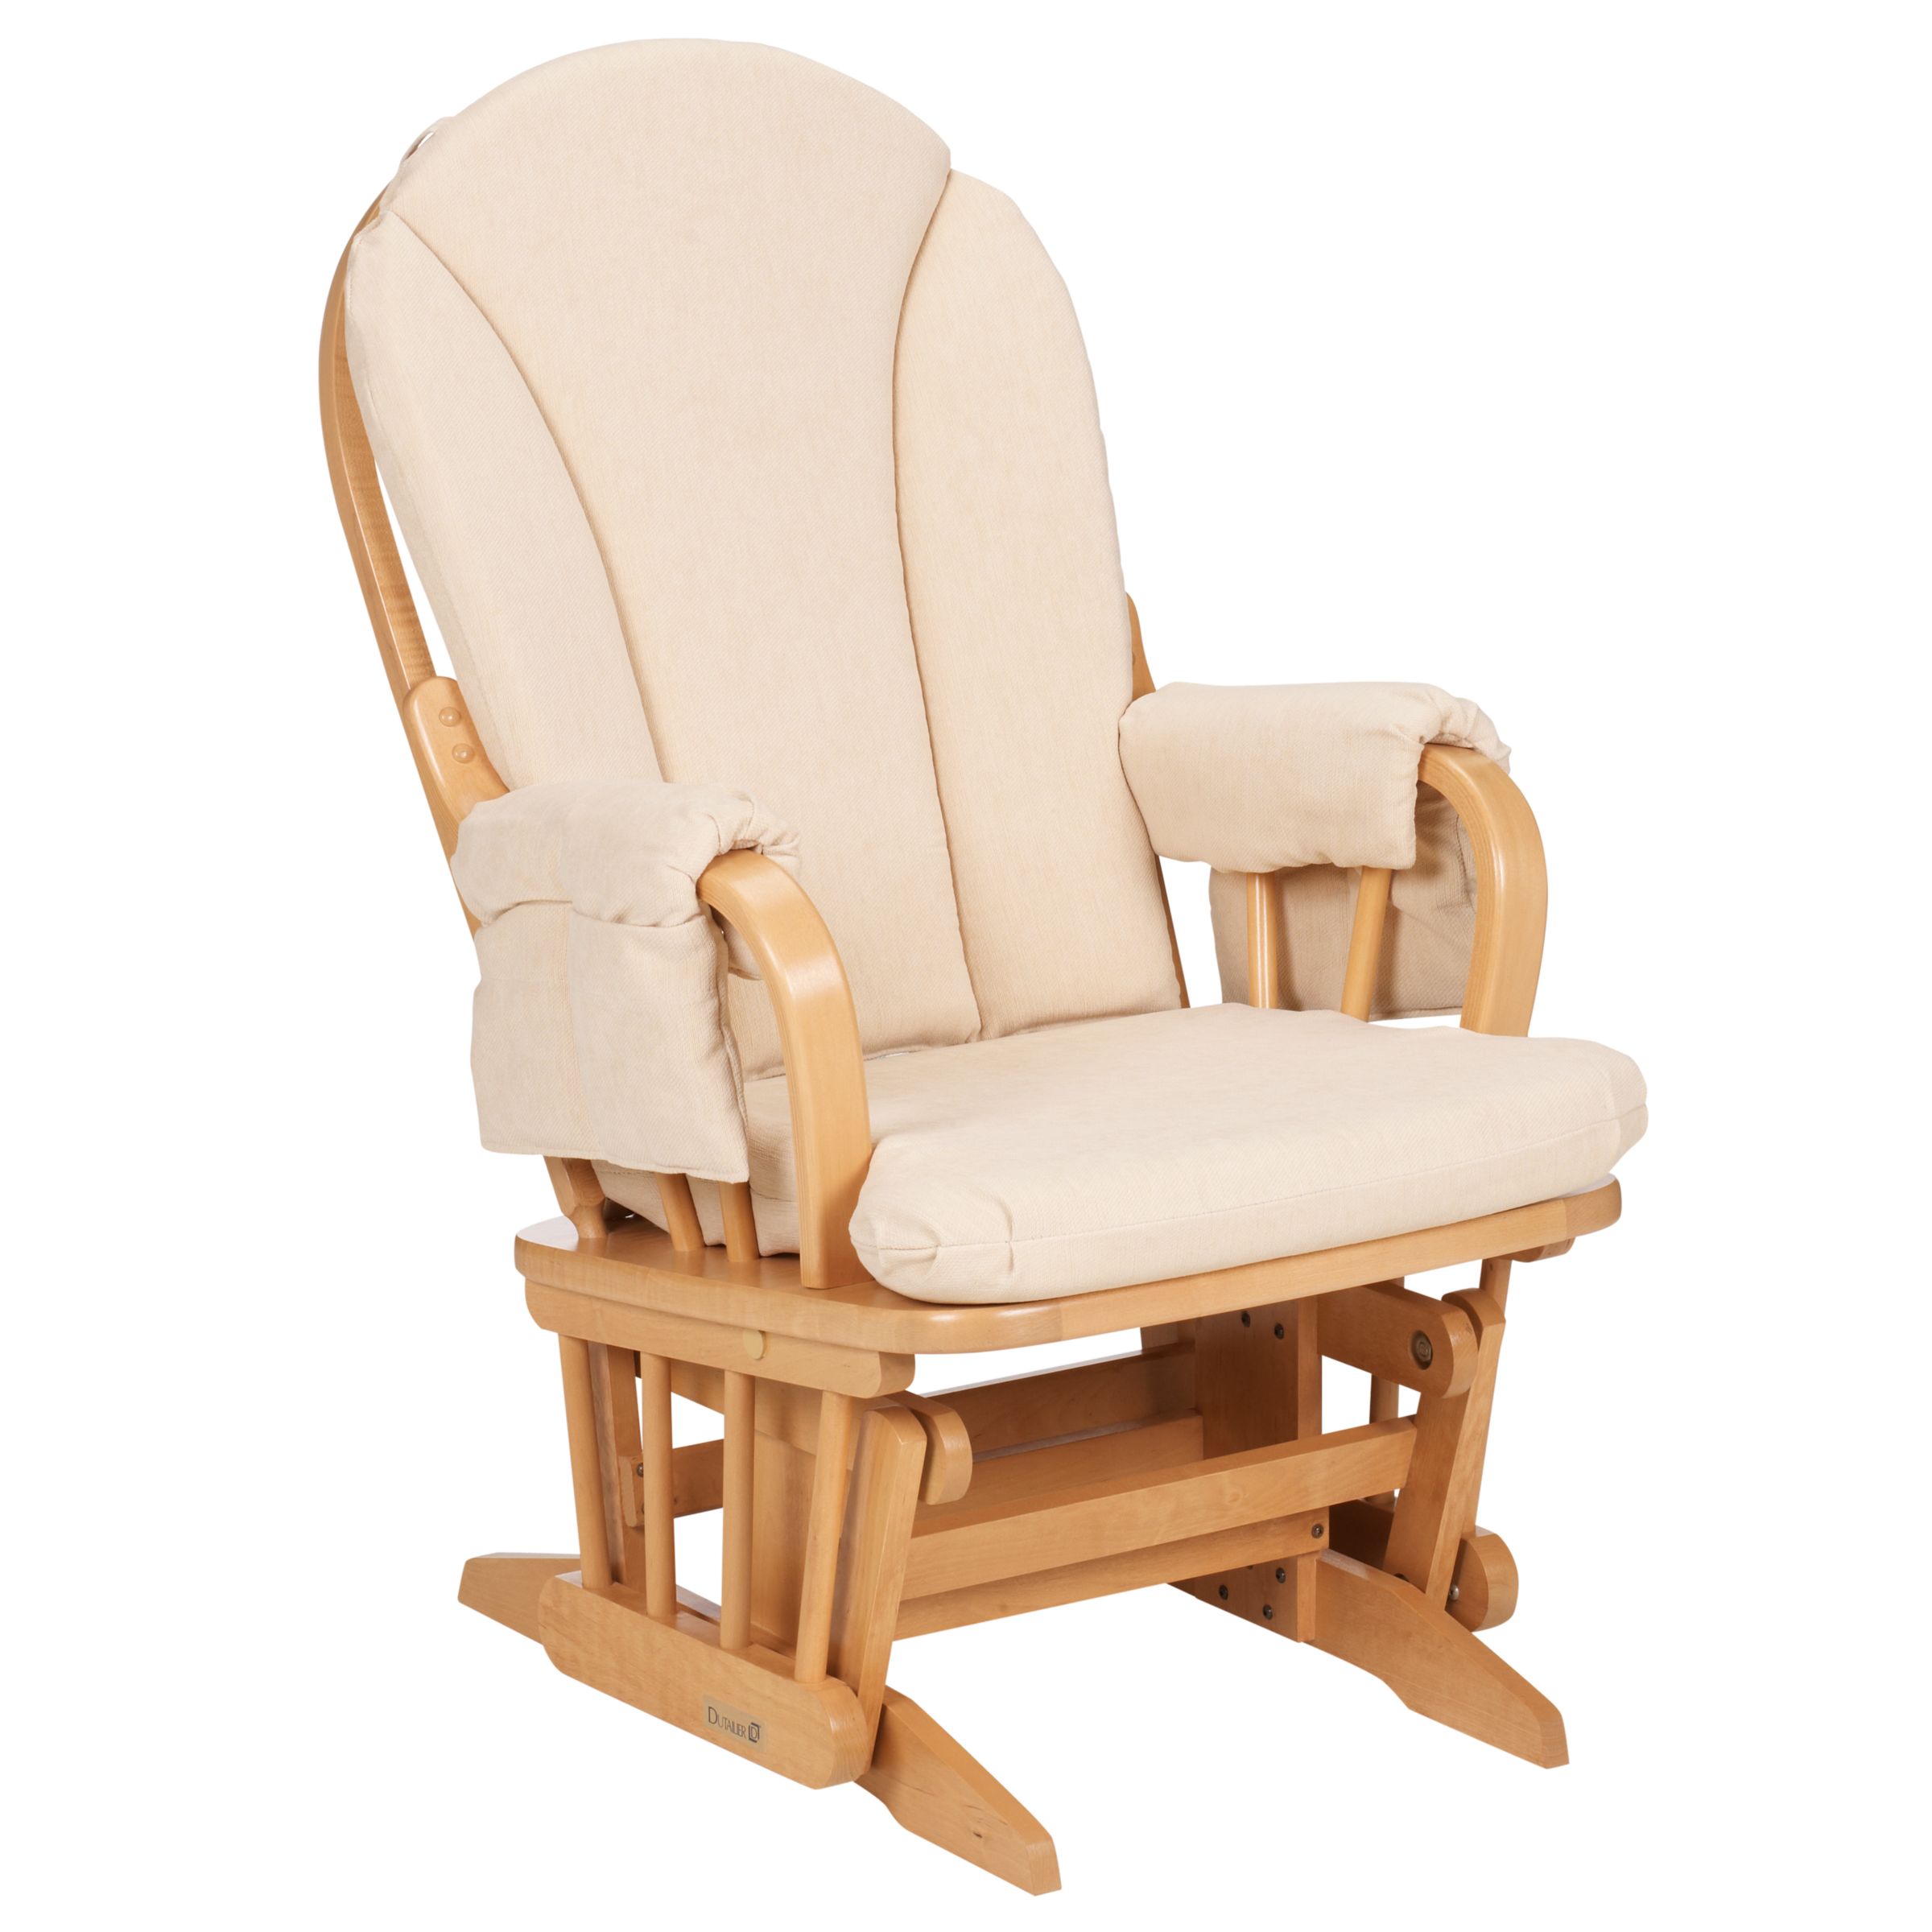 John Lewis Hayley Glider Chair, Beige/Natural